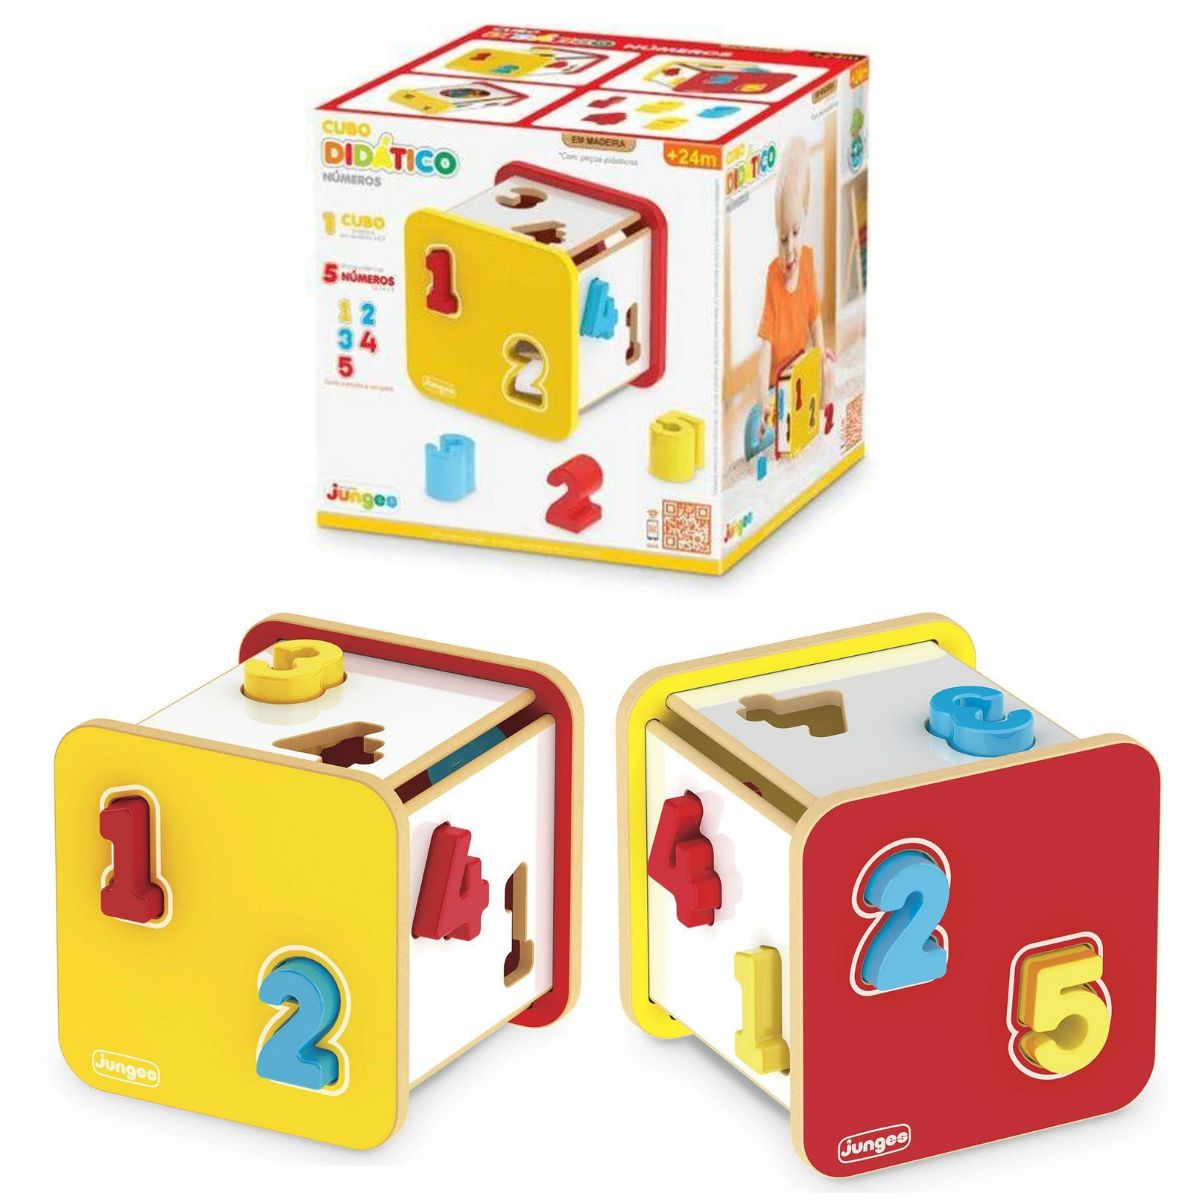 Brinquedo Infantil Educativo Blocos de Encaixe Montar Jogo Para Bebe 12  Peças Formas Geométricas Colorido